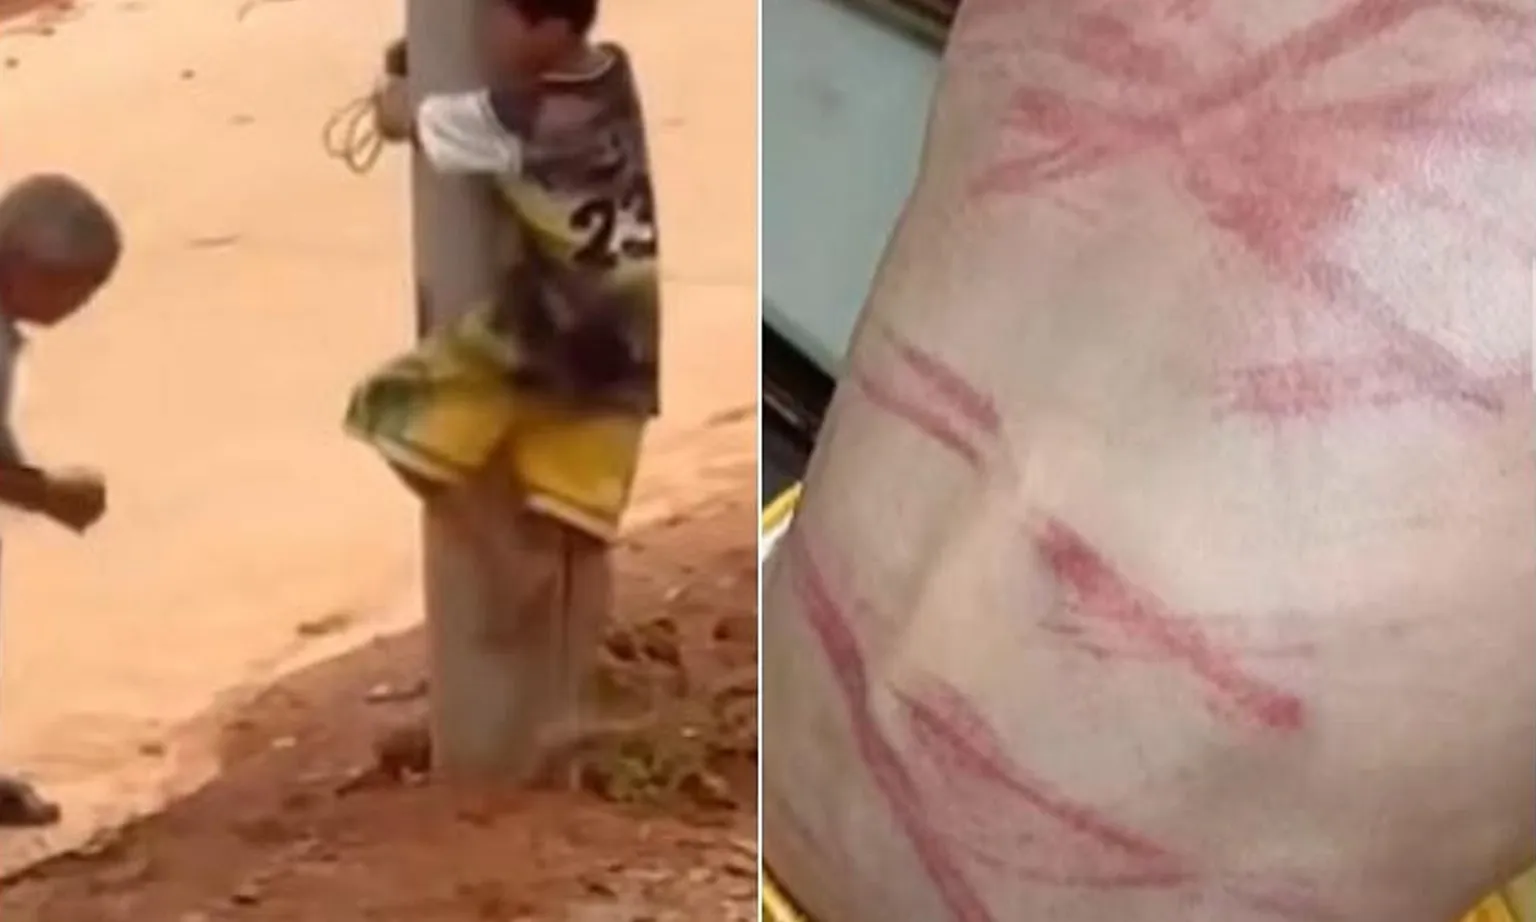 Trung Quốc: Cậu bé bị trói vào cột điện và quất tàn nhẫn bằng dây điện vì nghi trộm cắp